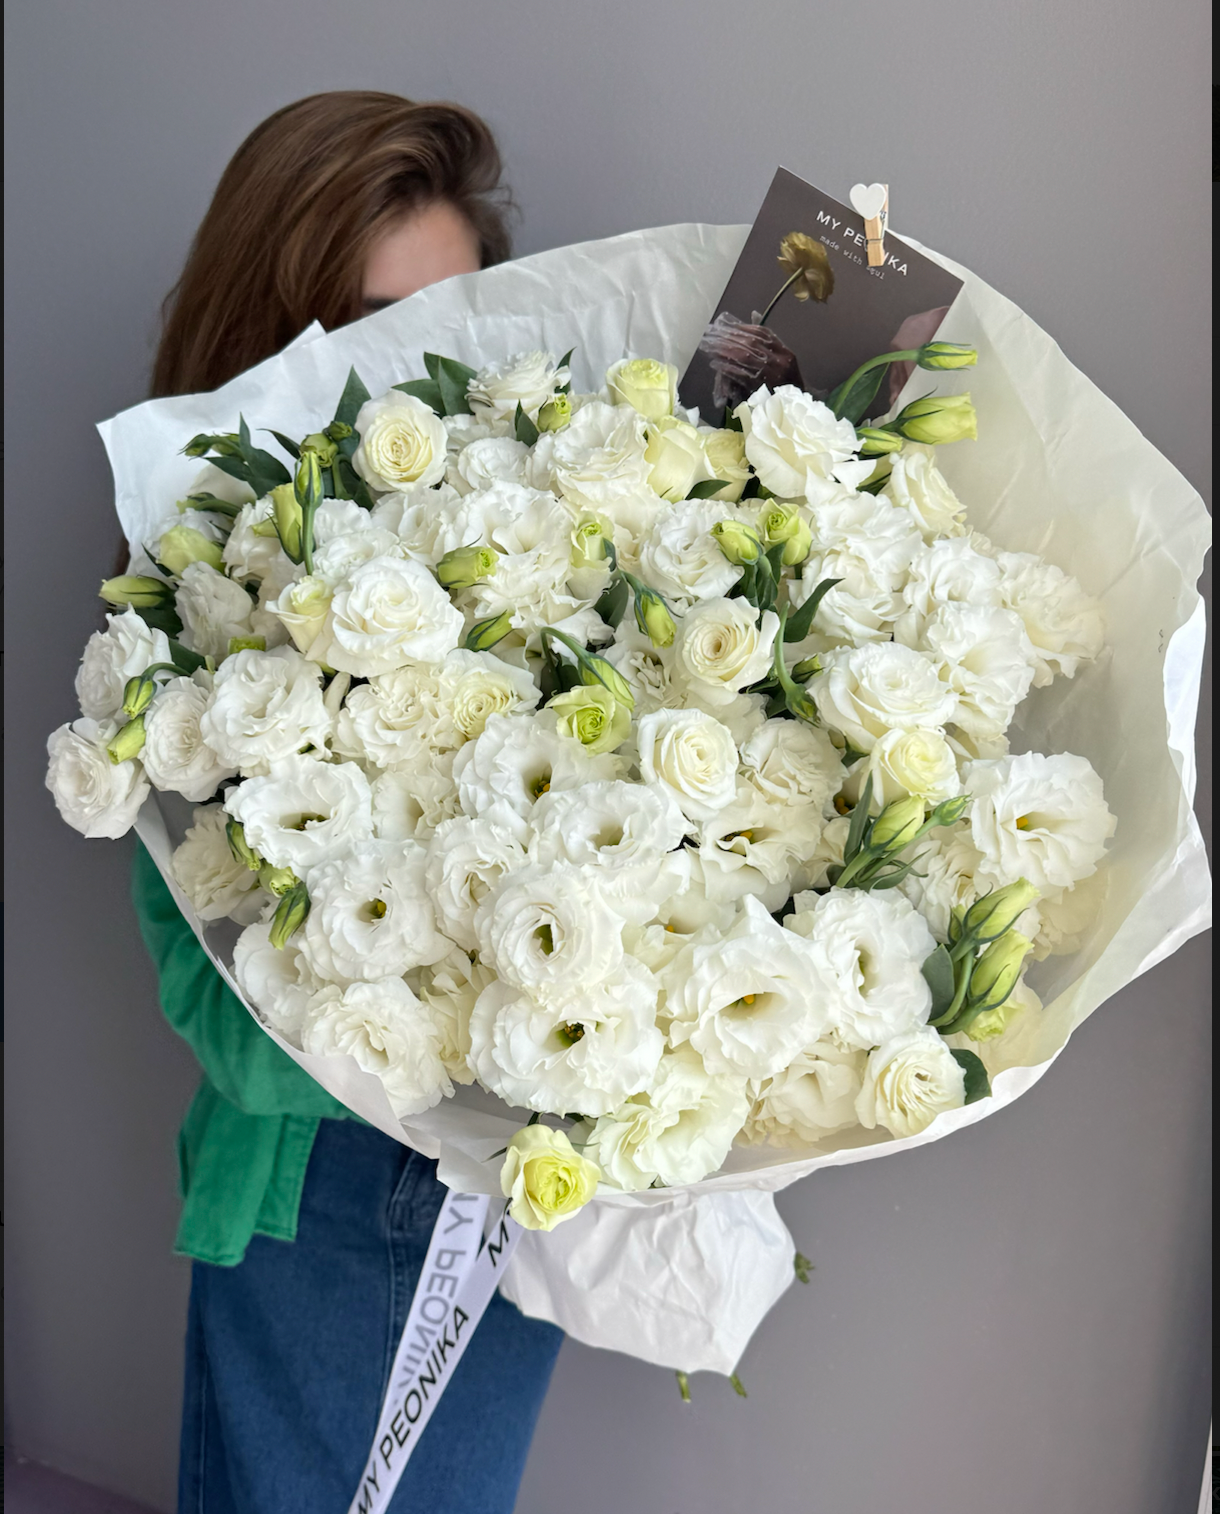 Bouquet “ Mamma mia Eustoma ” - white lisianthus